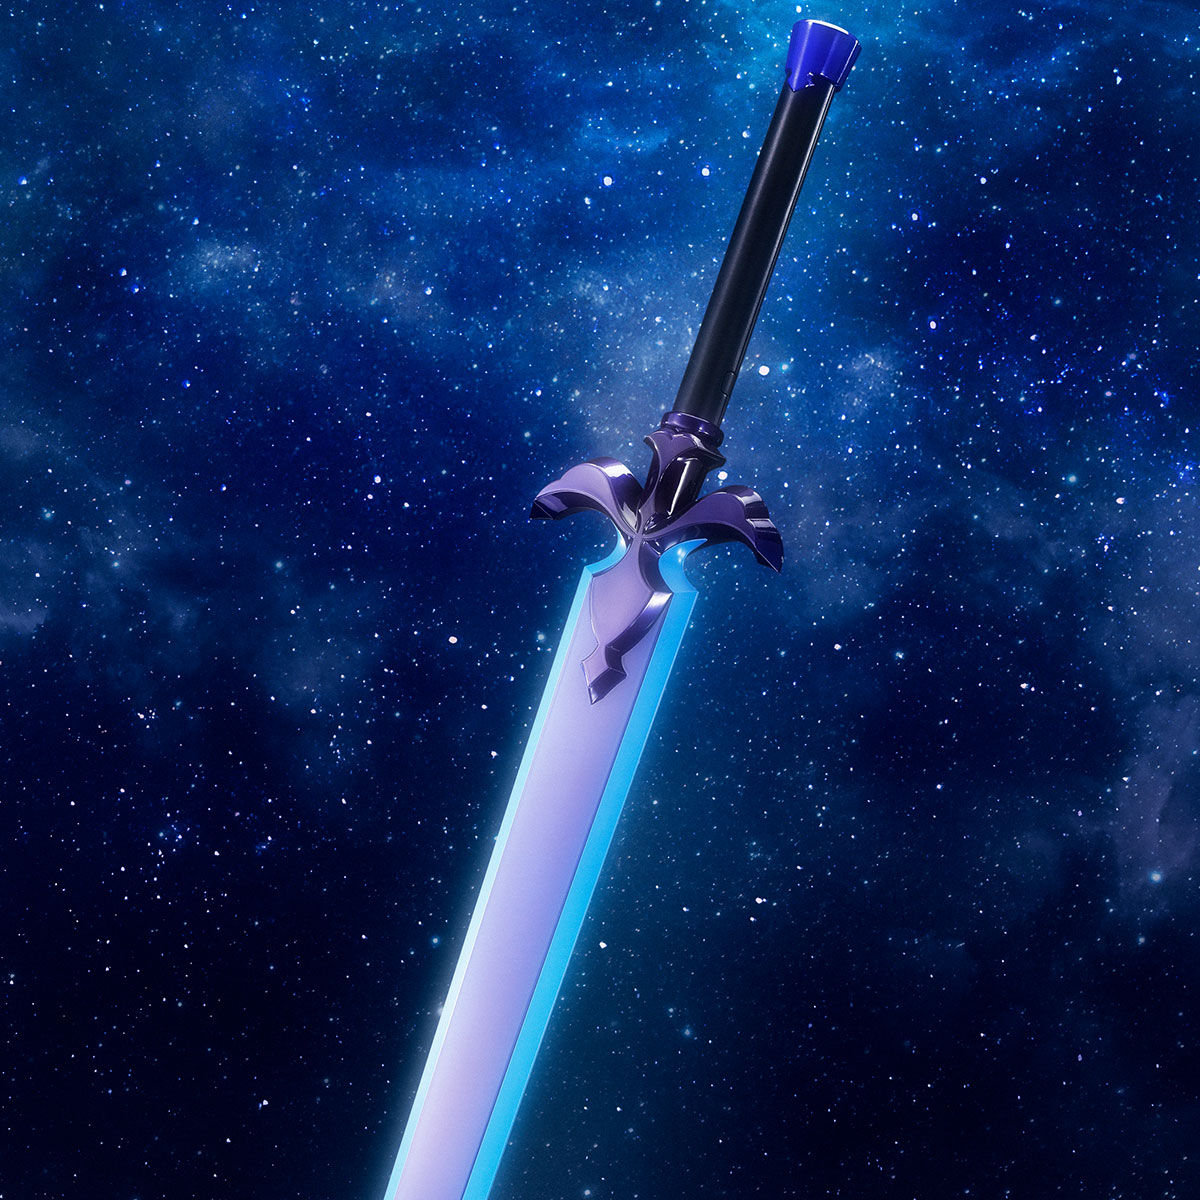 【栃木県】SAO ソードアートオンラインPROPLICA 夜空の剣 青薔薇の剣 2本セット アクリルスタンド